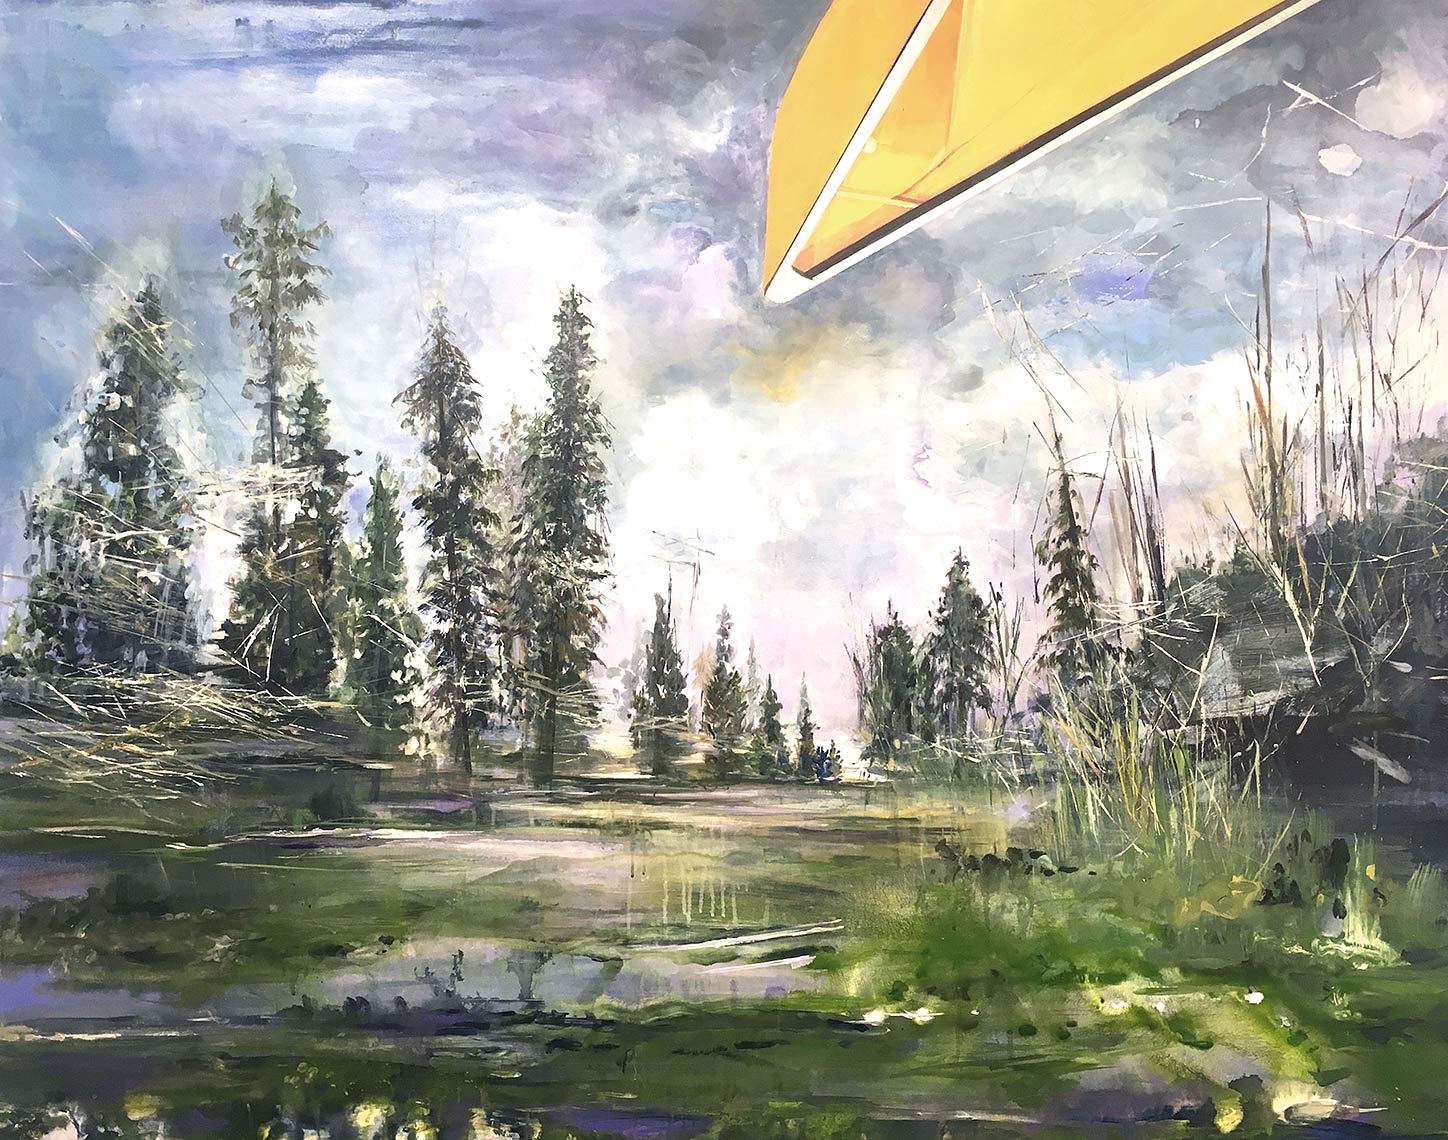 Portage-Canoe-2017-Acrylic-on-canvas-48x-60